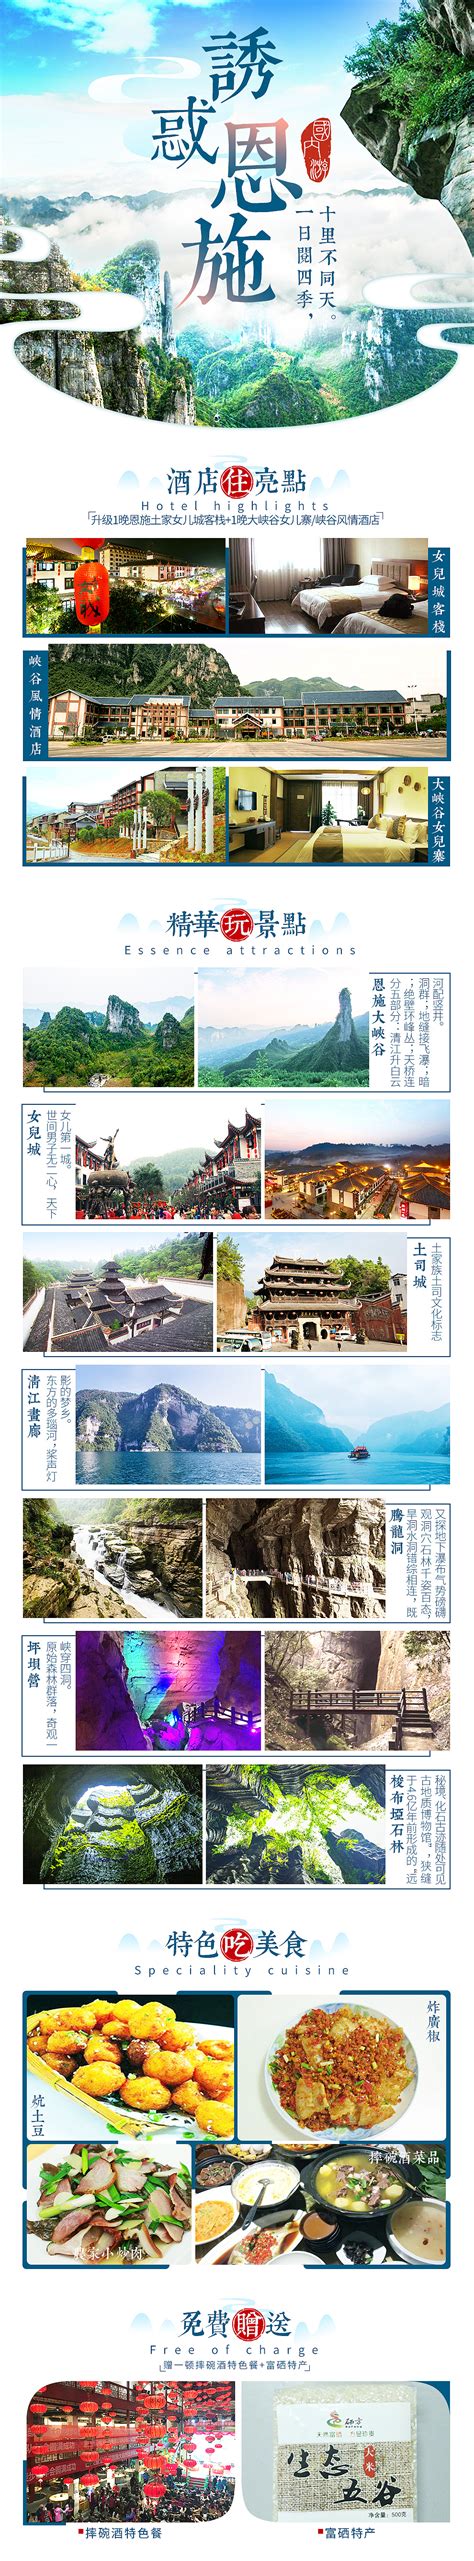 恩施旅游移动端海报系列PSD广告设计素材海报模板免费下载-享设计